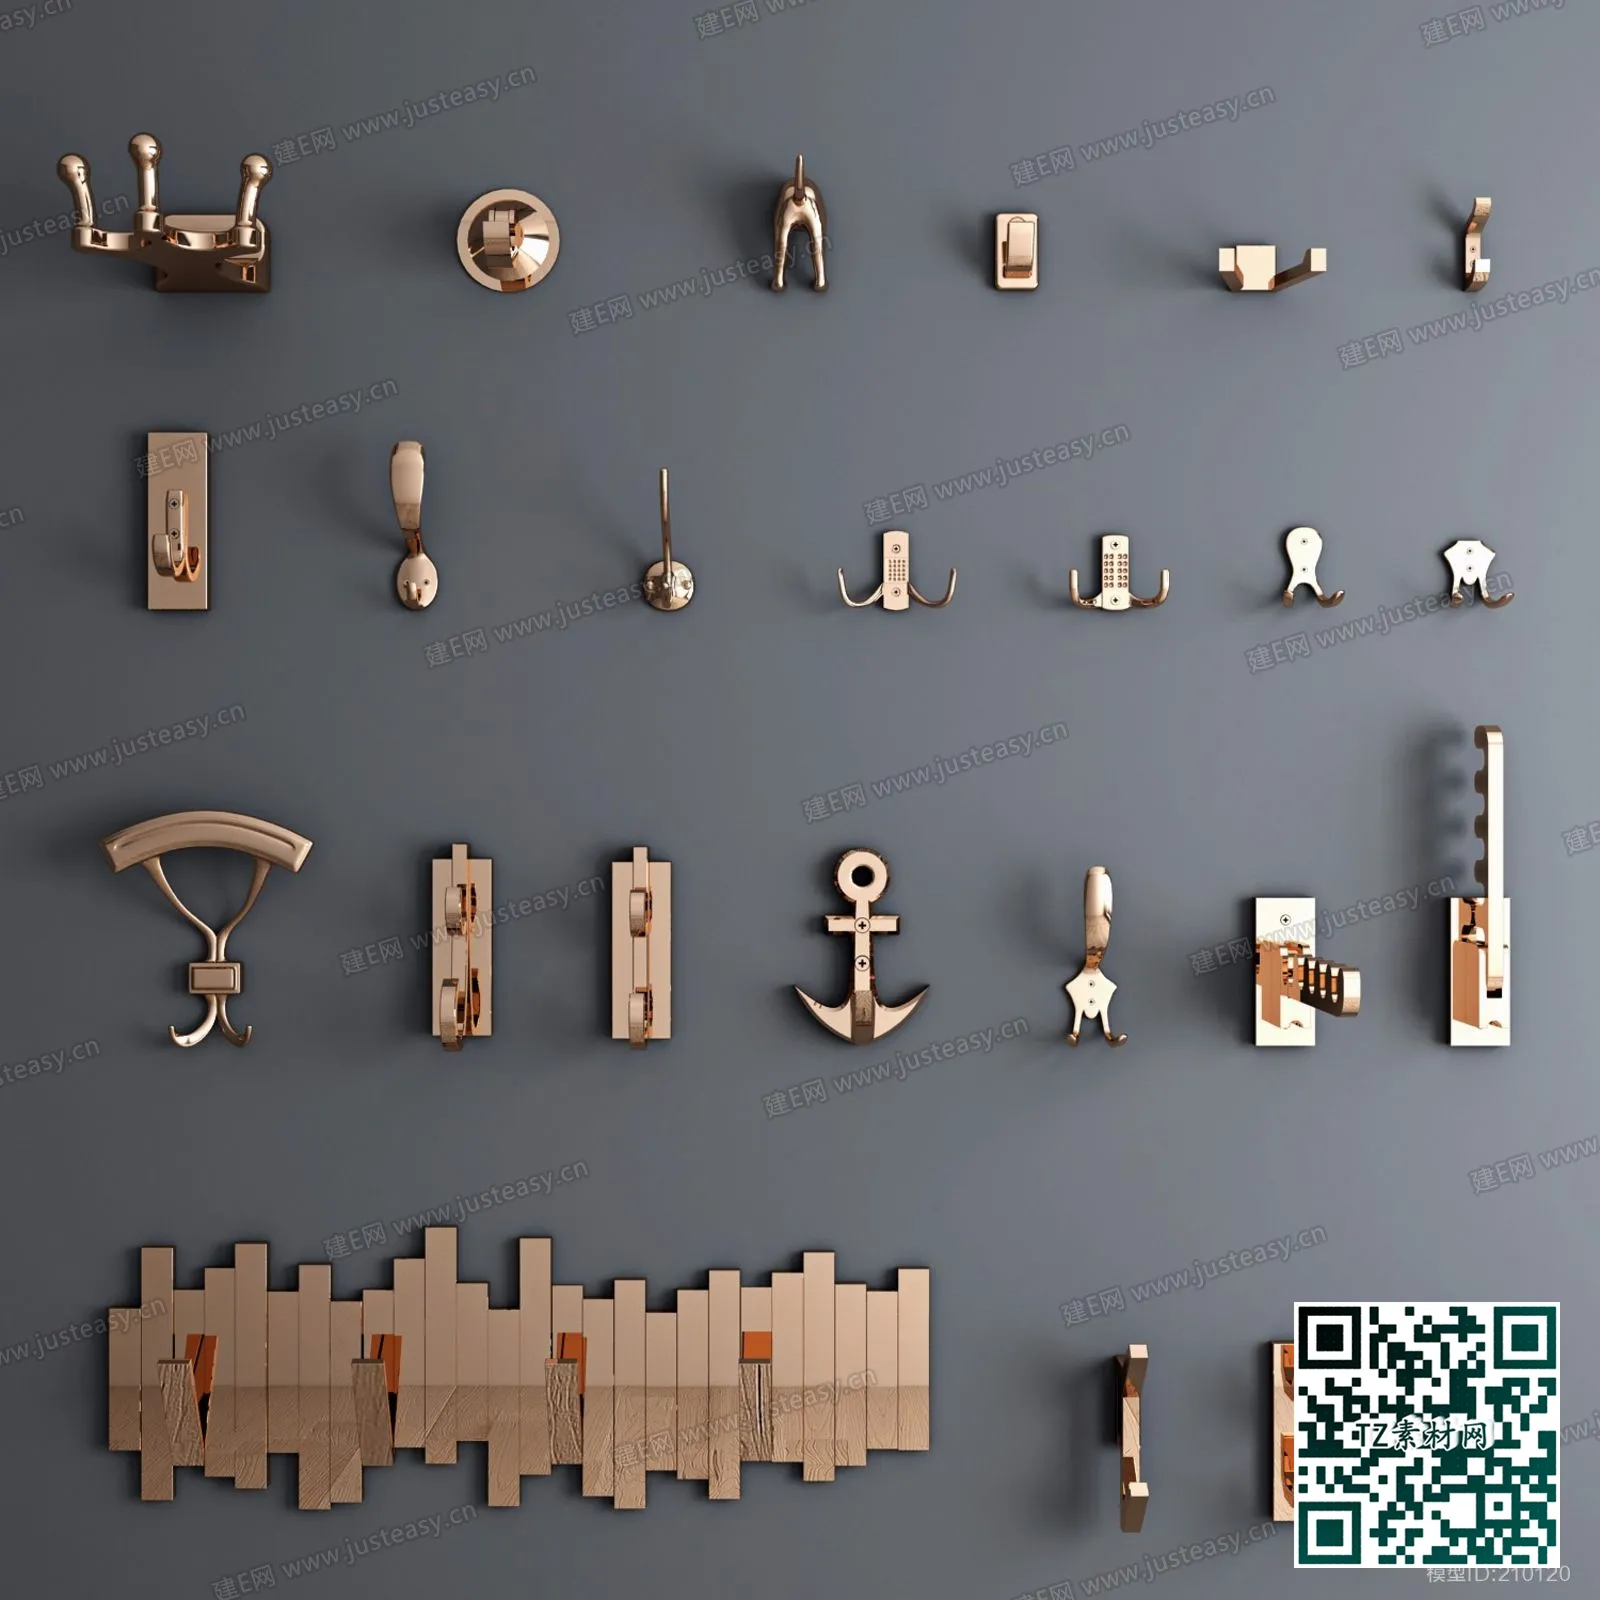 3DSKY MODELS – HANDLE DOOR 3D MODELS – 037